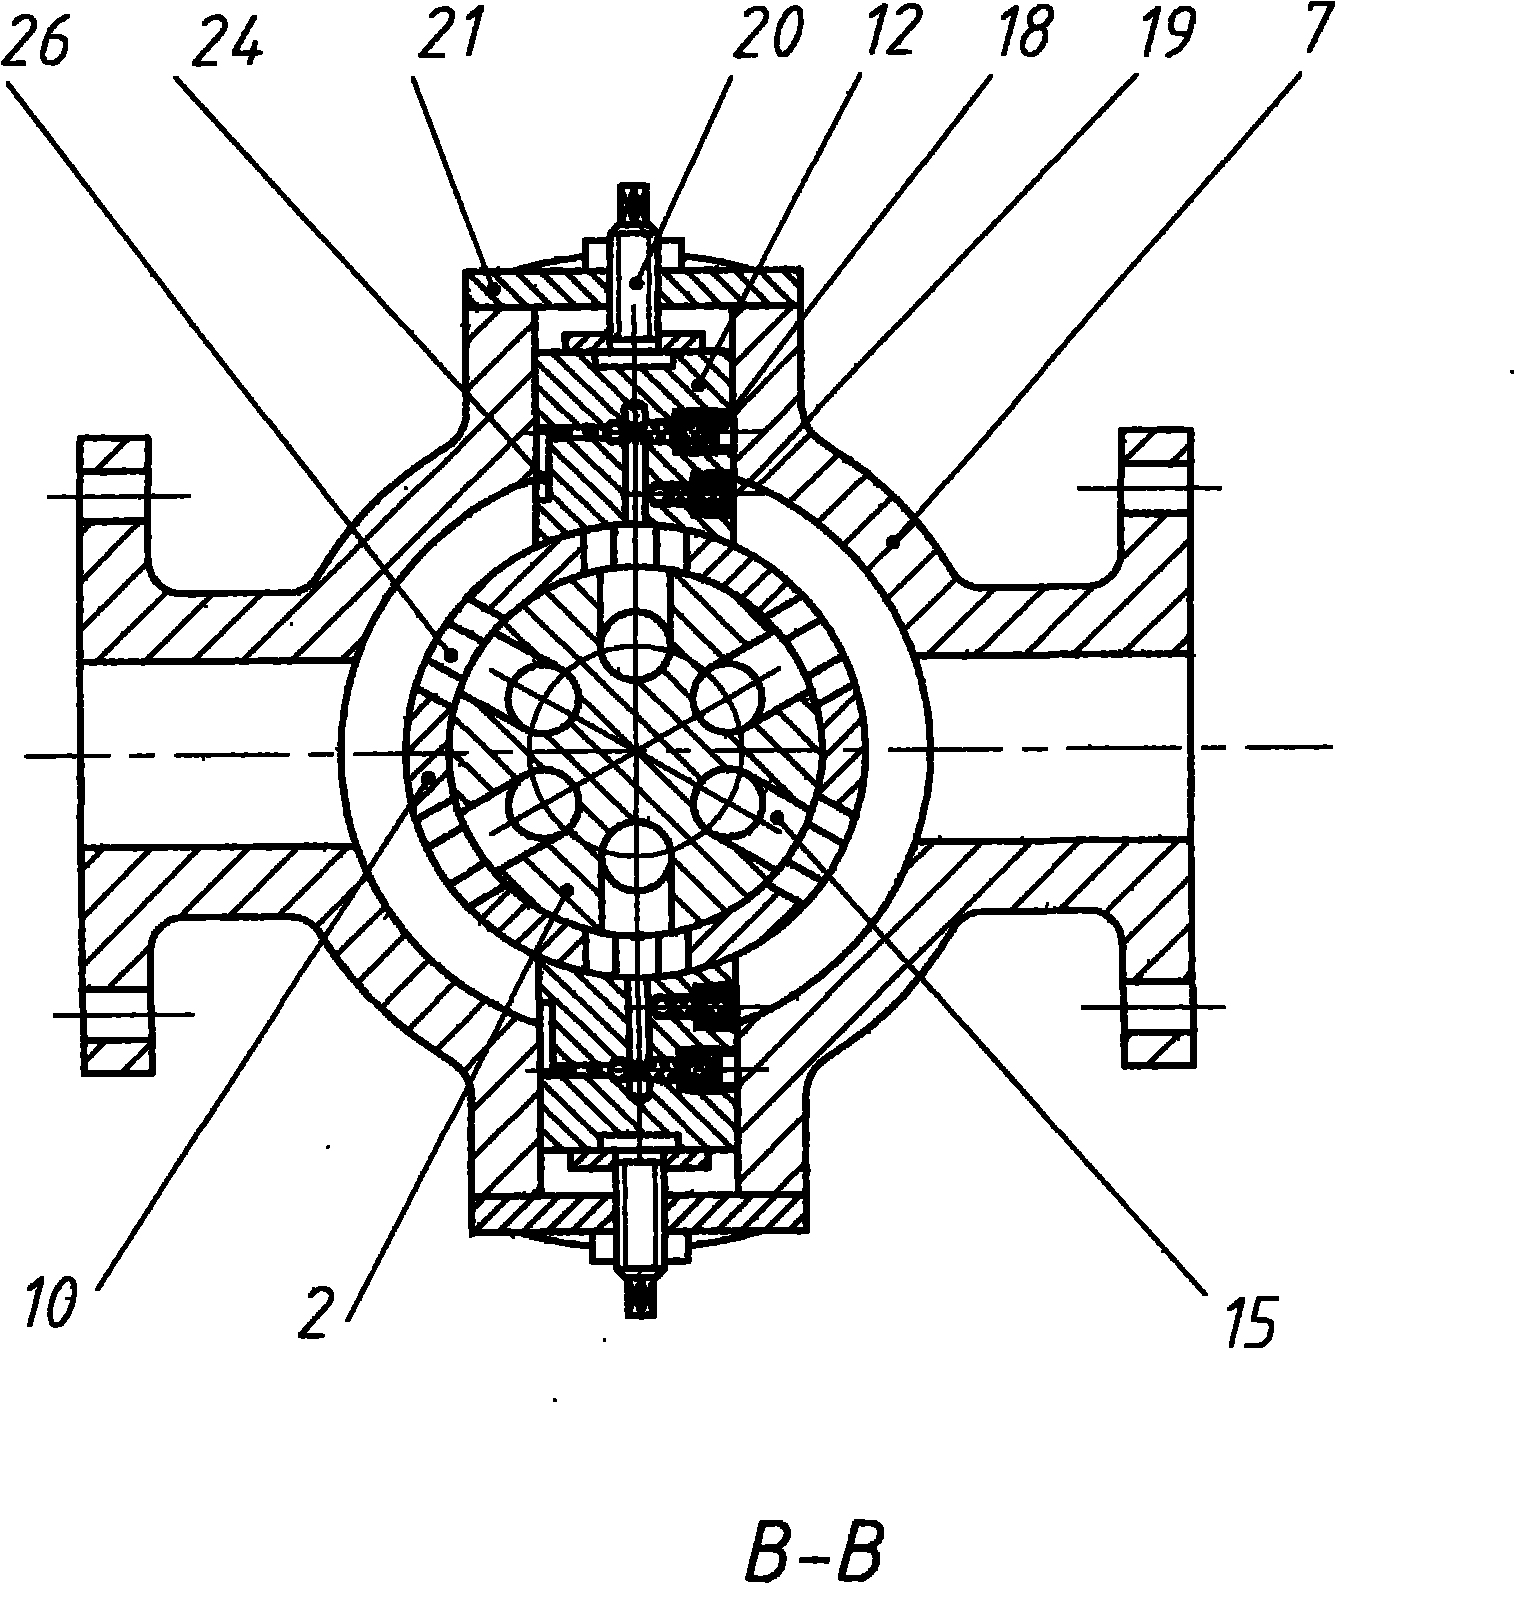 External radial plunger pump of sealing mechanism